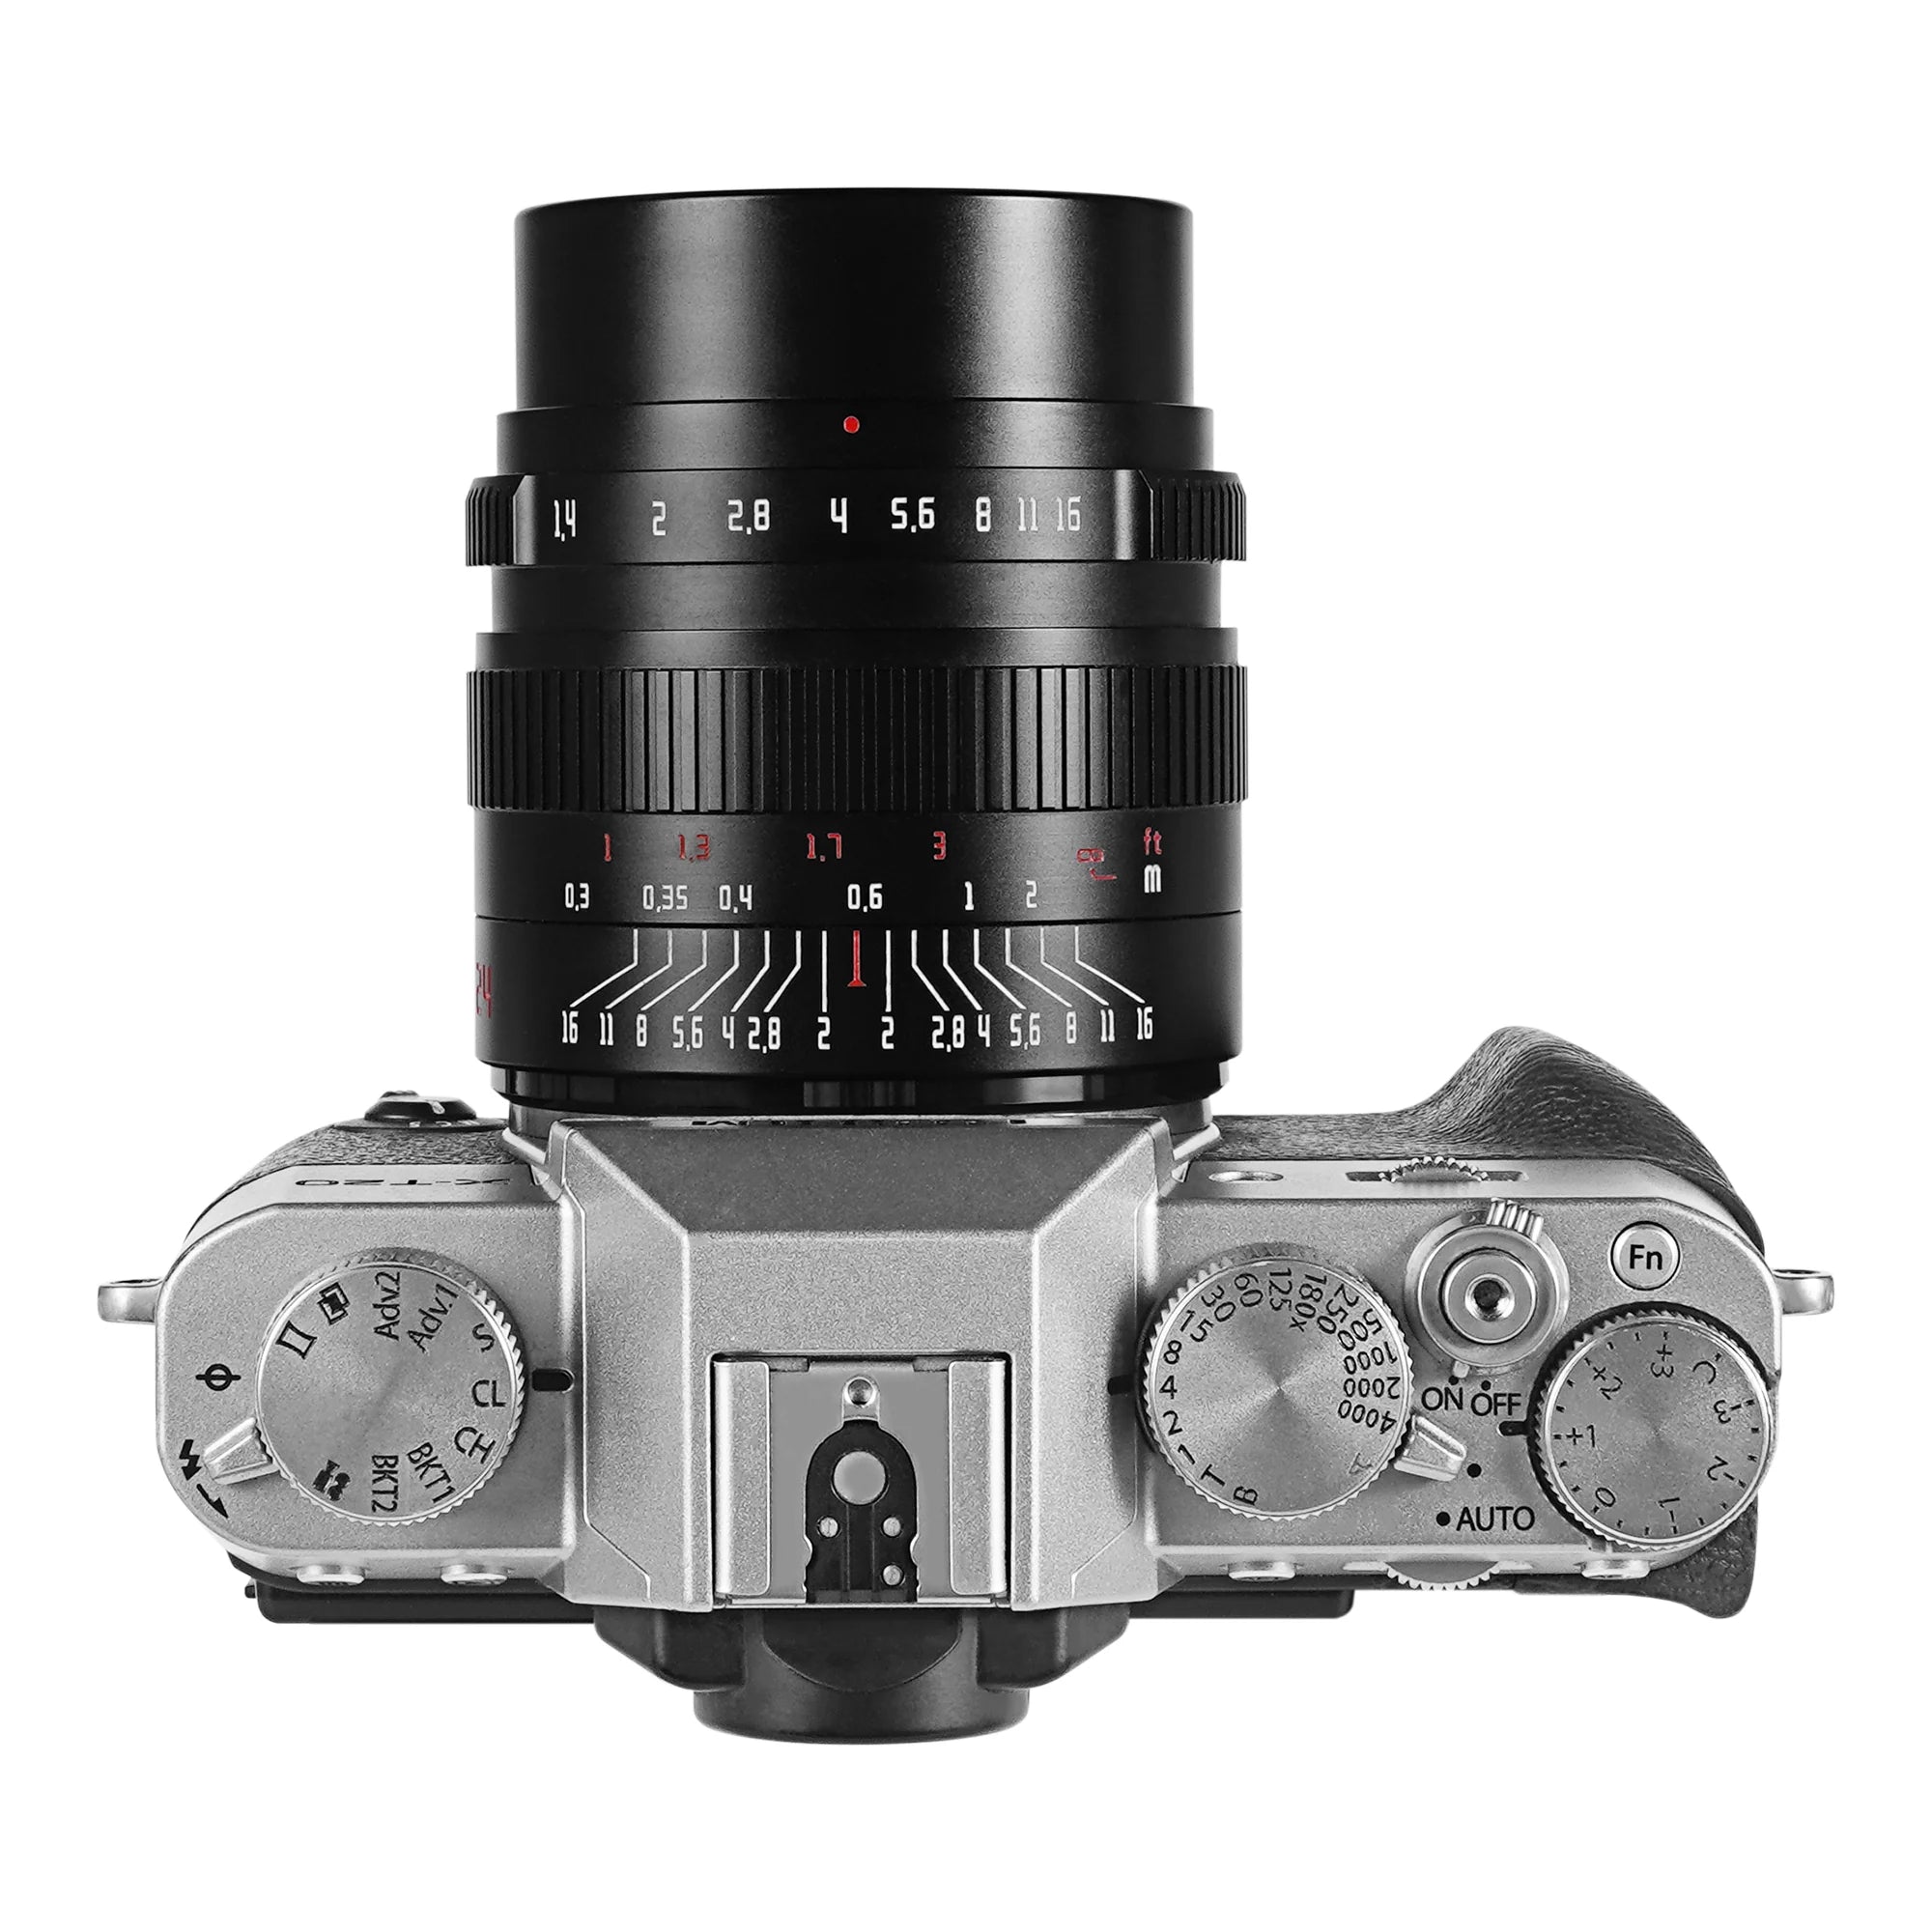 24mm f/1.4 APS-C lens